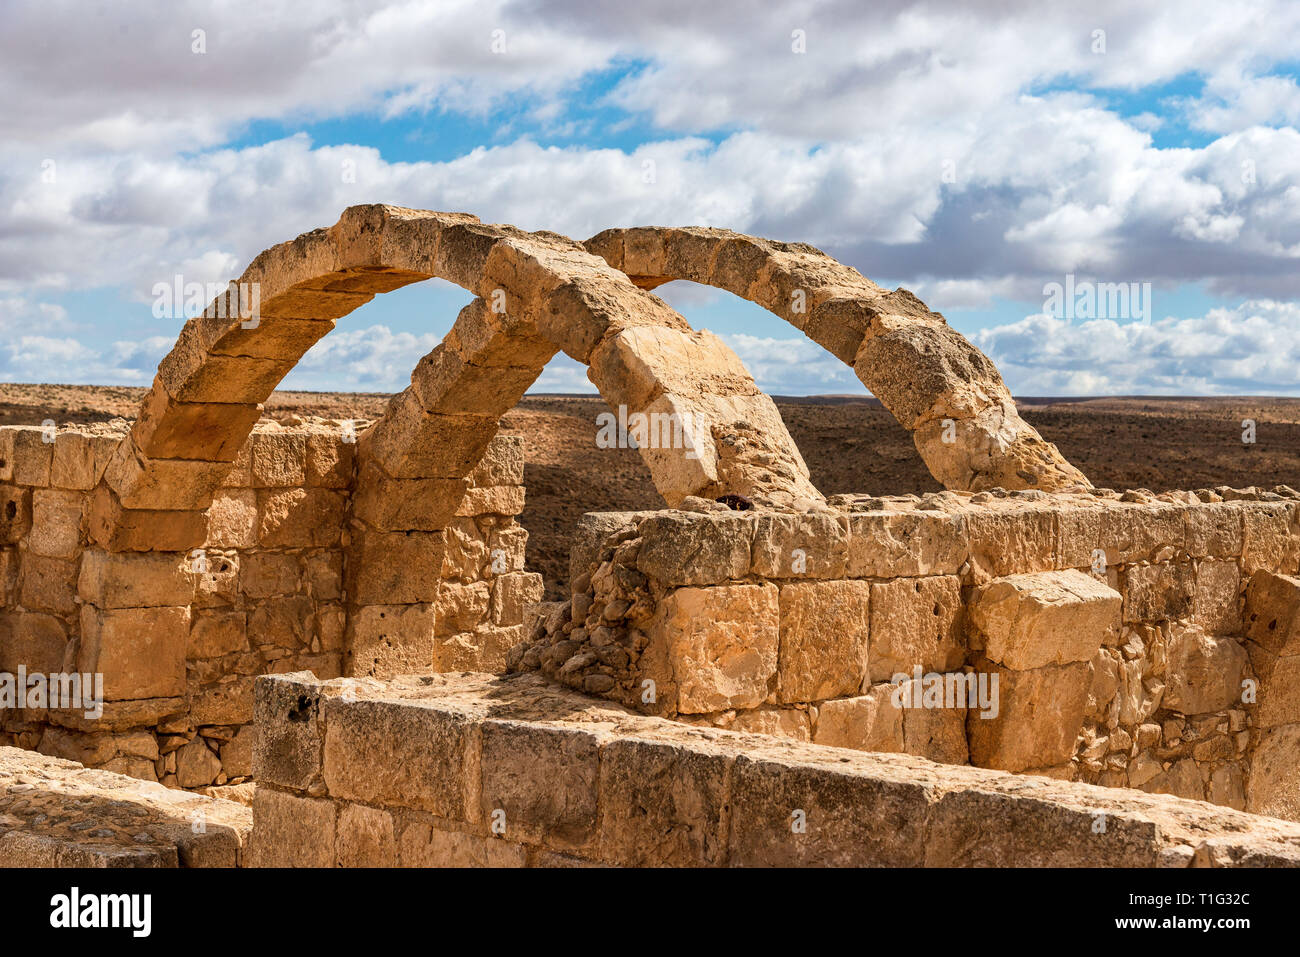 AVDAT, Israël / FEB 19, 2018 : les ruines de cette ville nabatéenne chrétienne dans désert israélien du Néguev, abandonné après le 7e siècle conquête musulmane. Banque D'Images